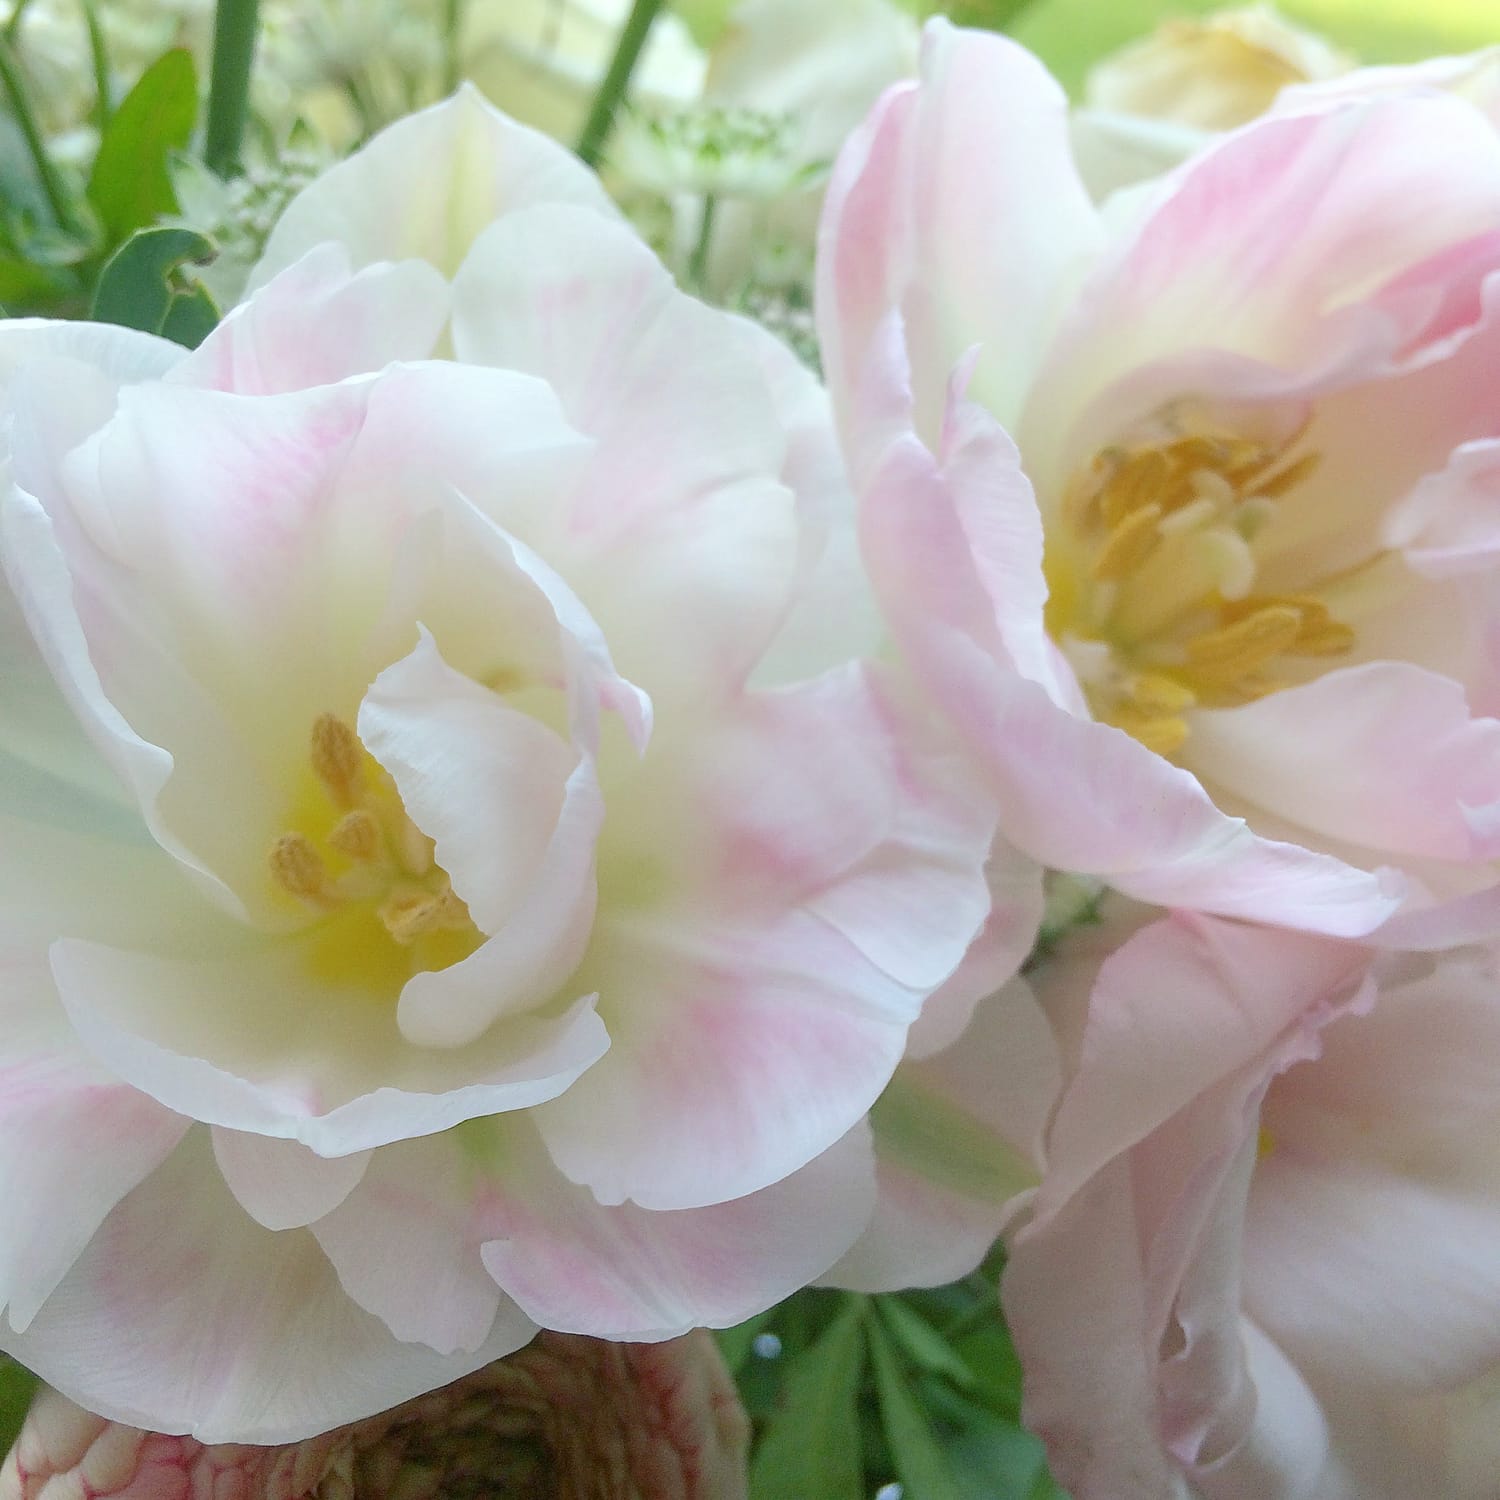 angelique tulips my top 10 spring wedding flowers